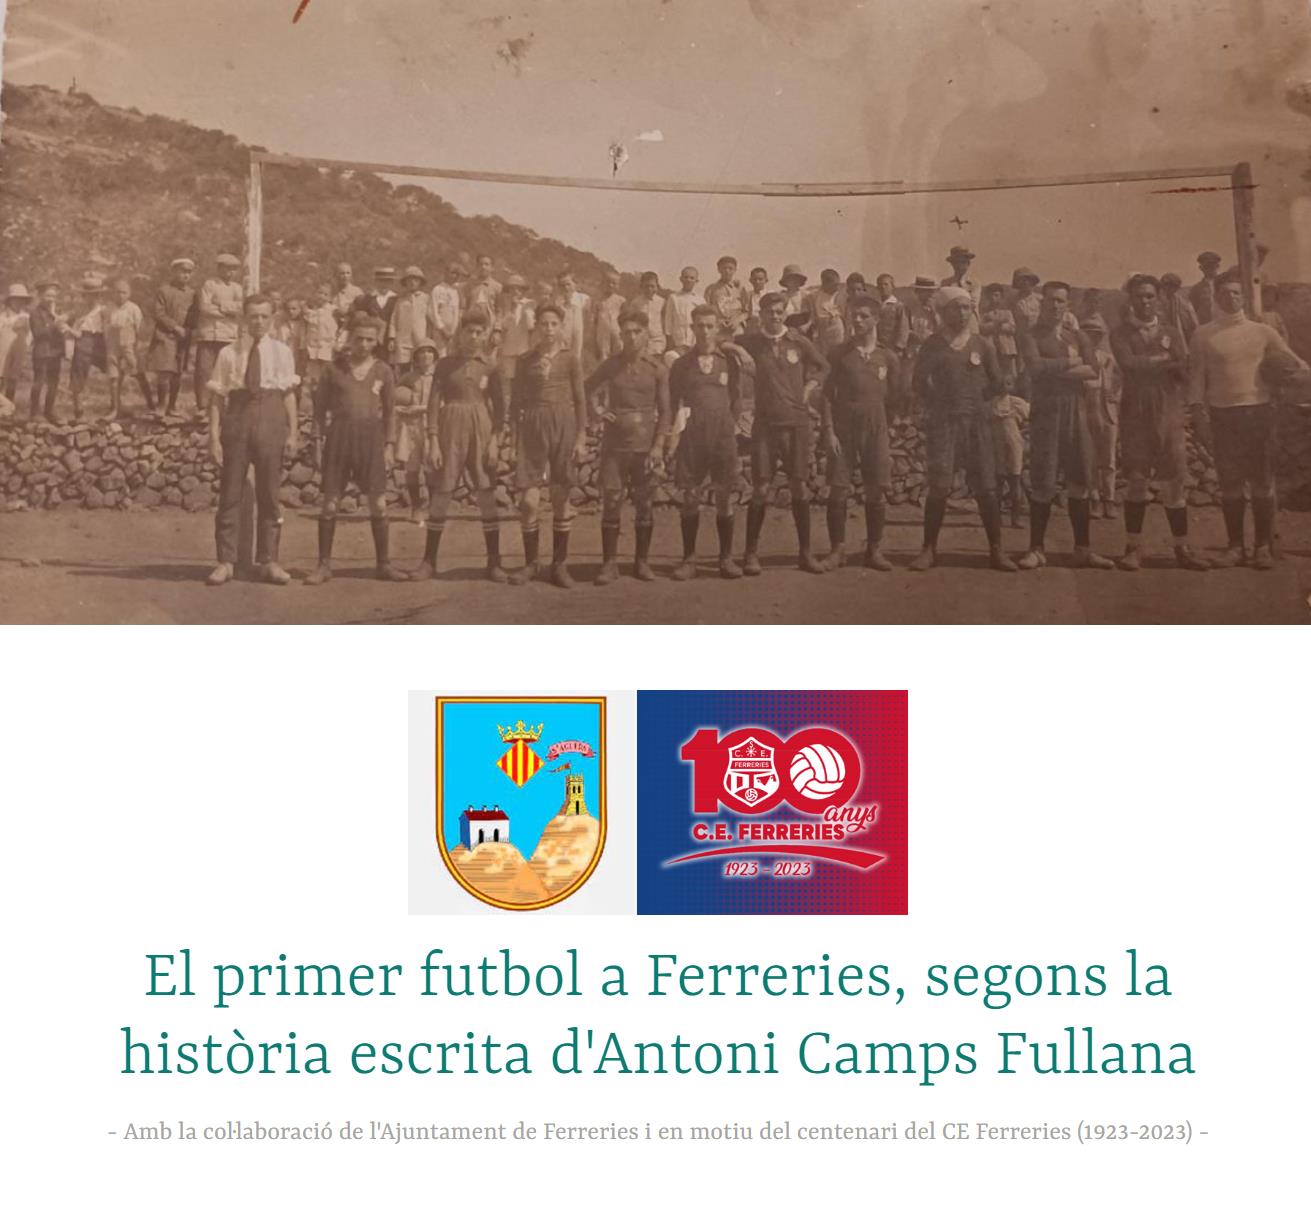 El primer futbol a Ferreries, segons la història escrita d'Antoni Camps Fullana